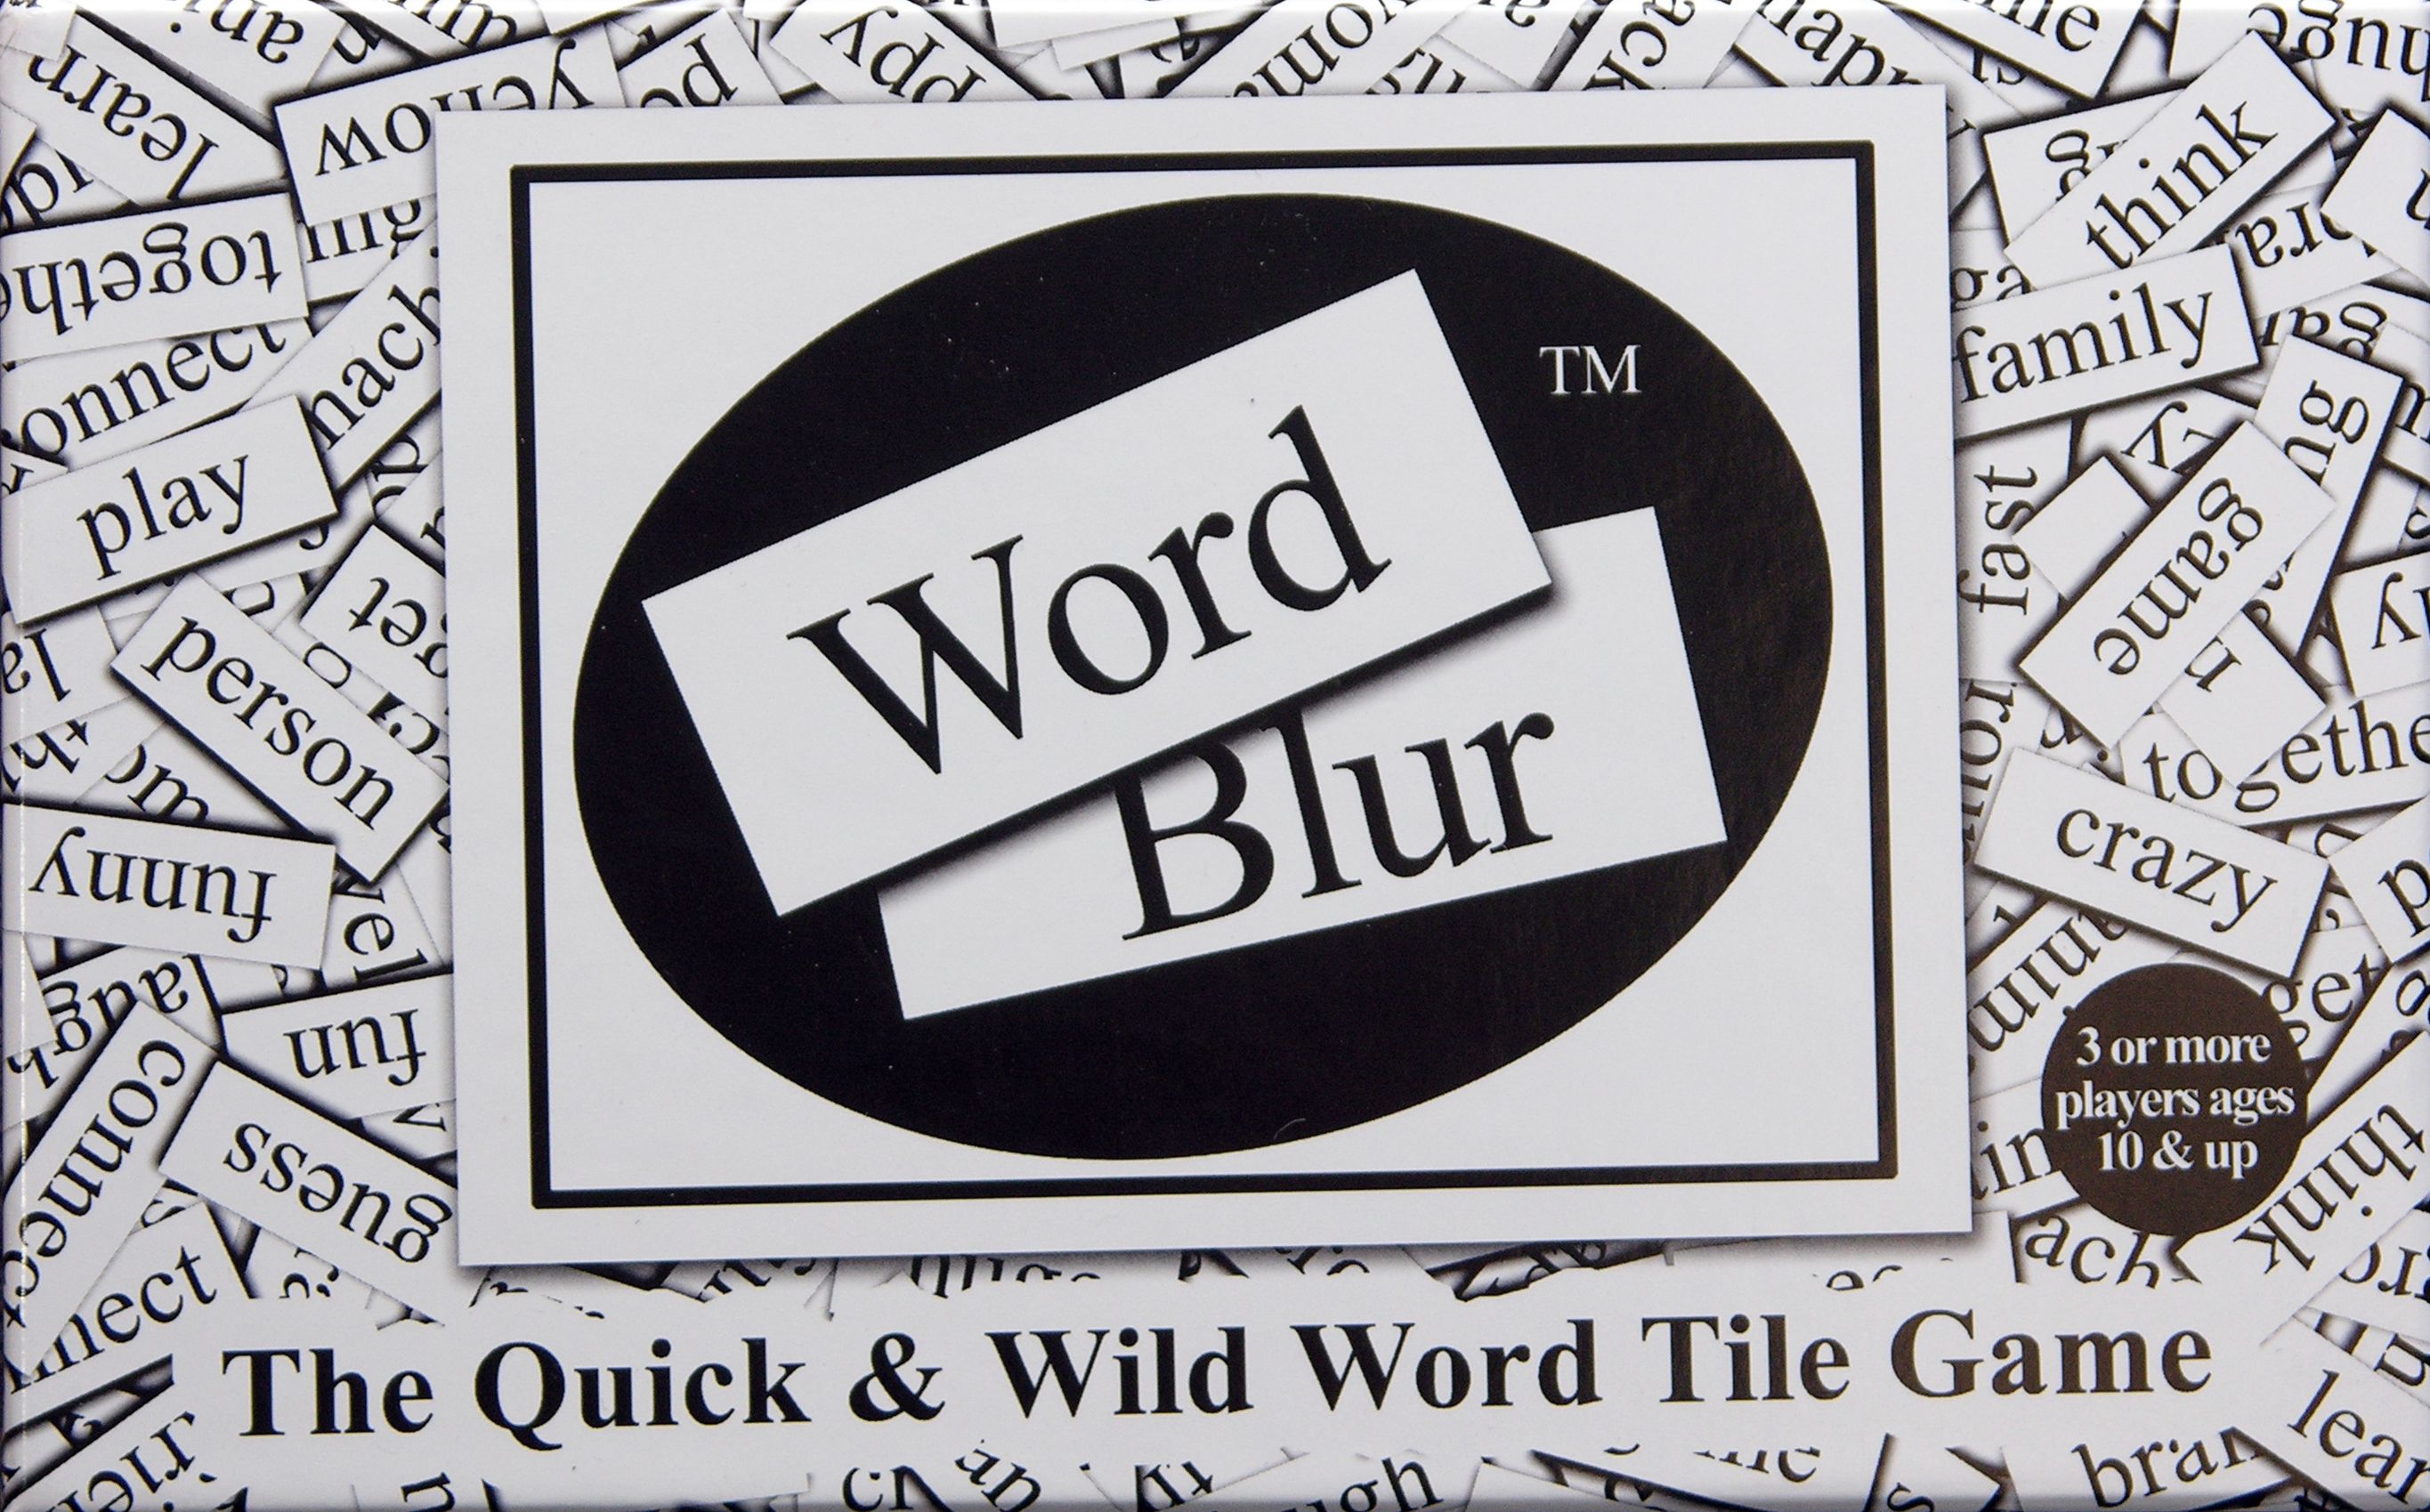 Word Blur